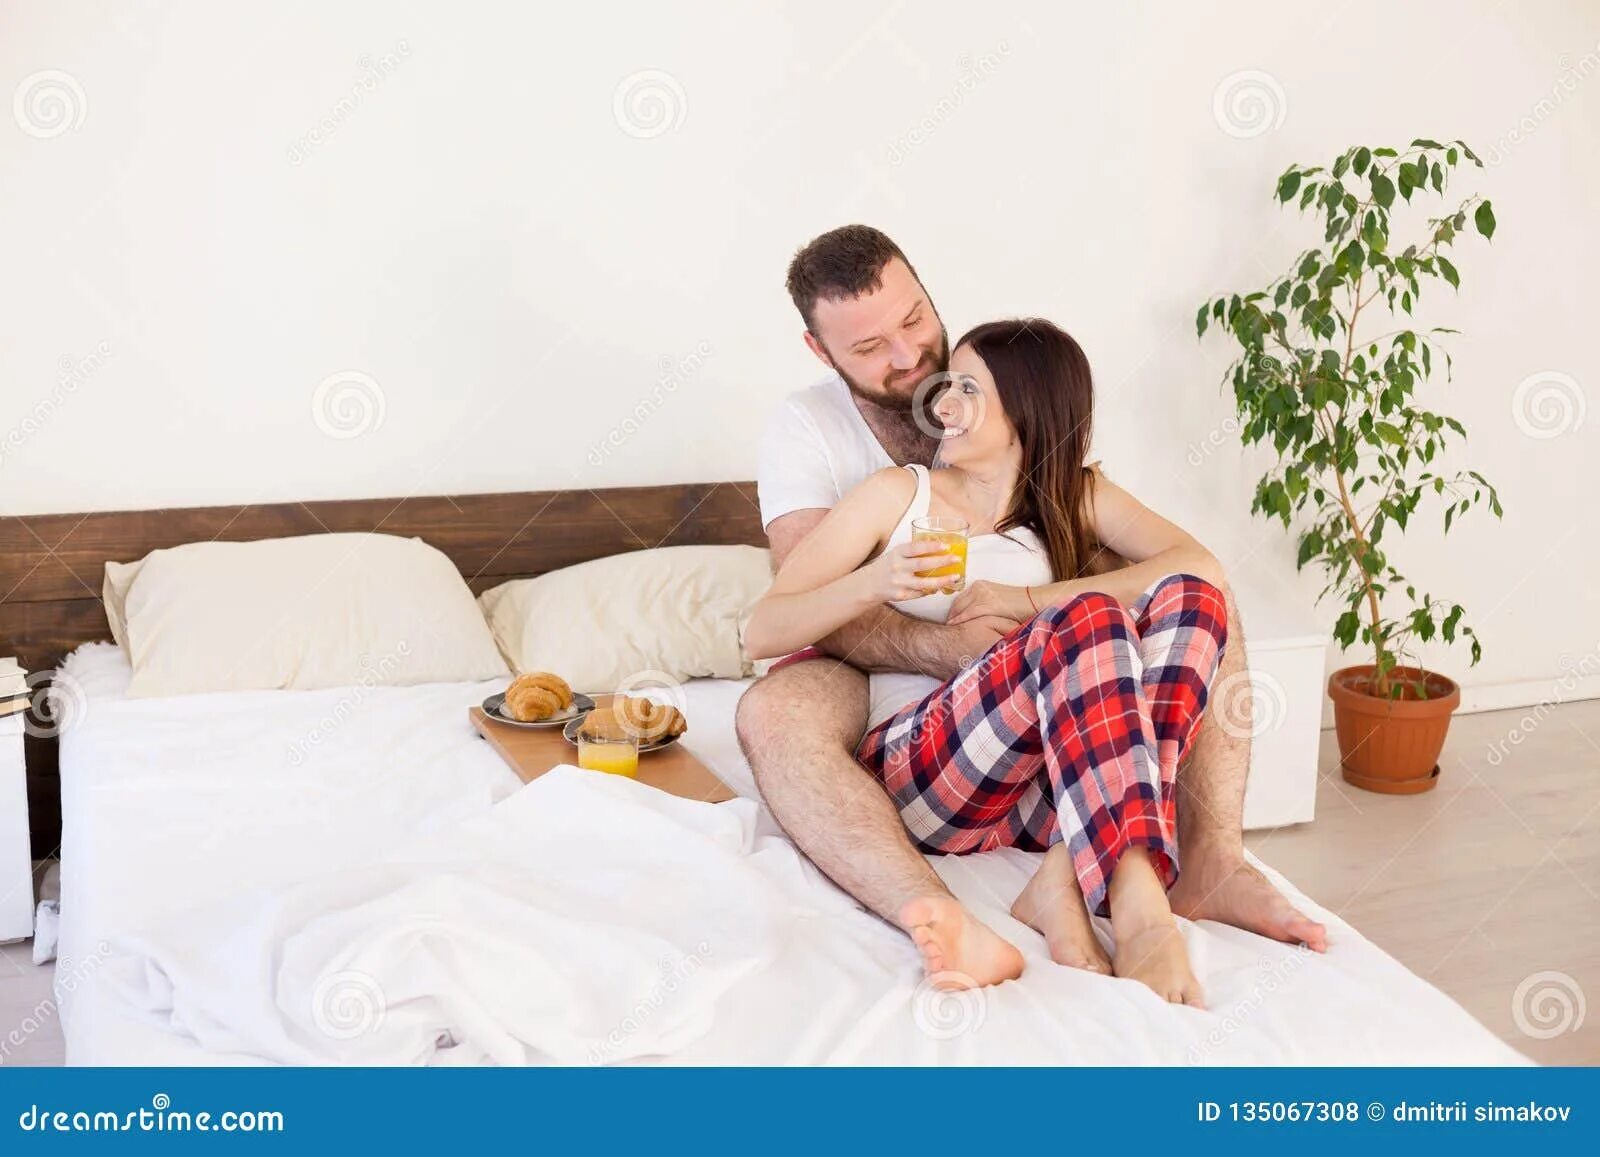 Муж и жена в постельке. Мужчина и женщина в постели. Супруги в кровати. Муж и жена утром в постели.